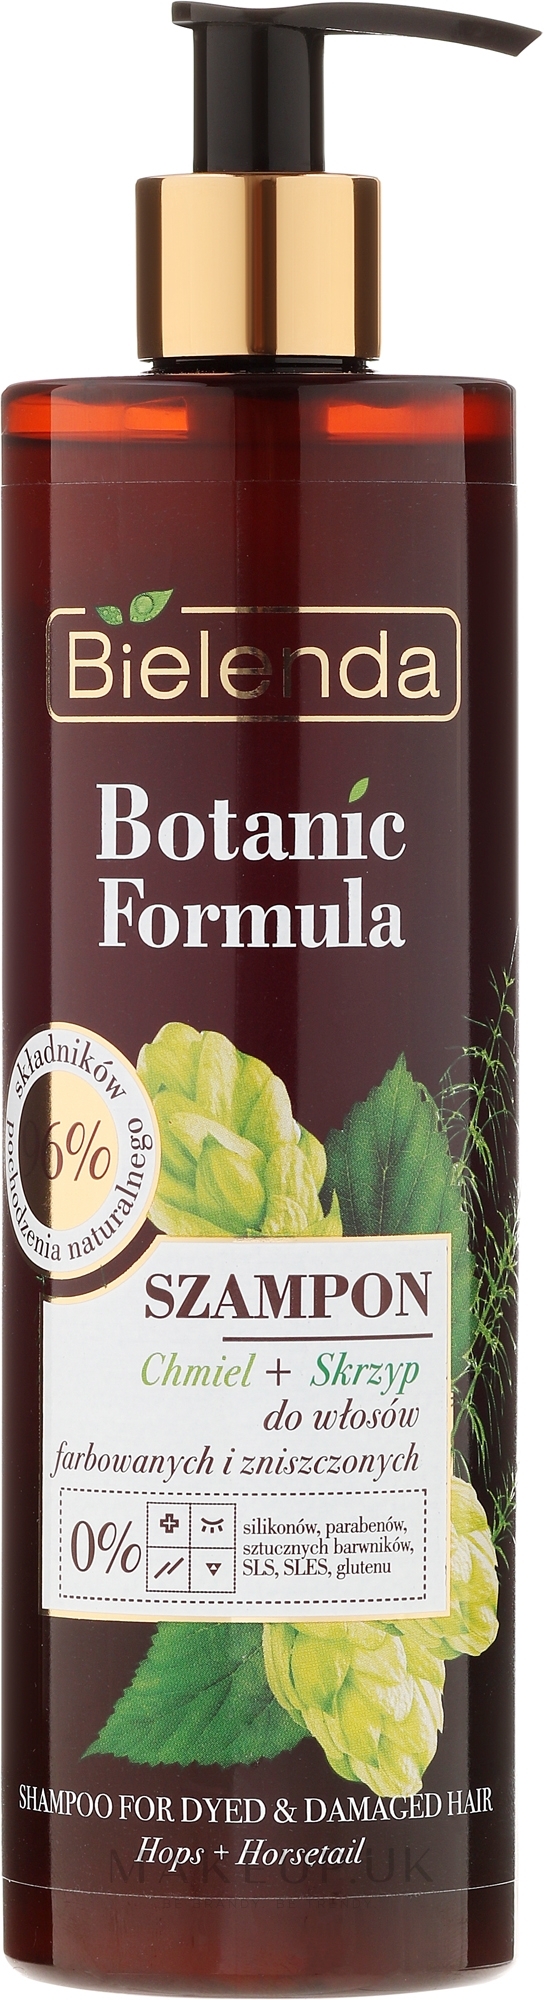 bielenda botanic formula odżywka do włosów chmiel skrzyp wizaż